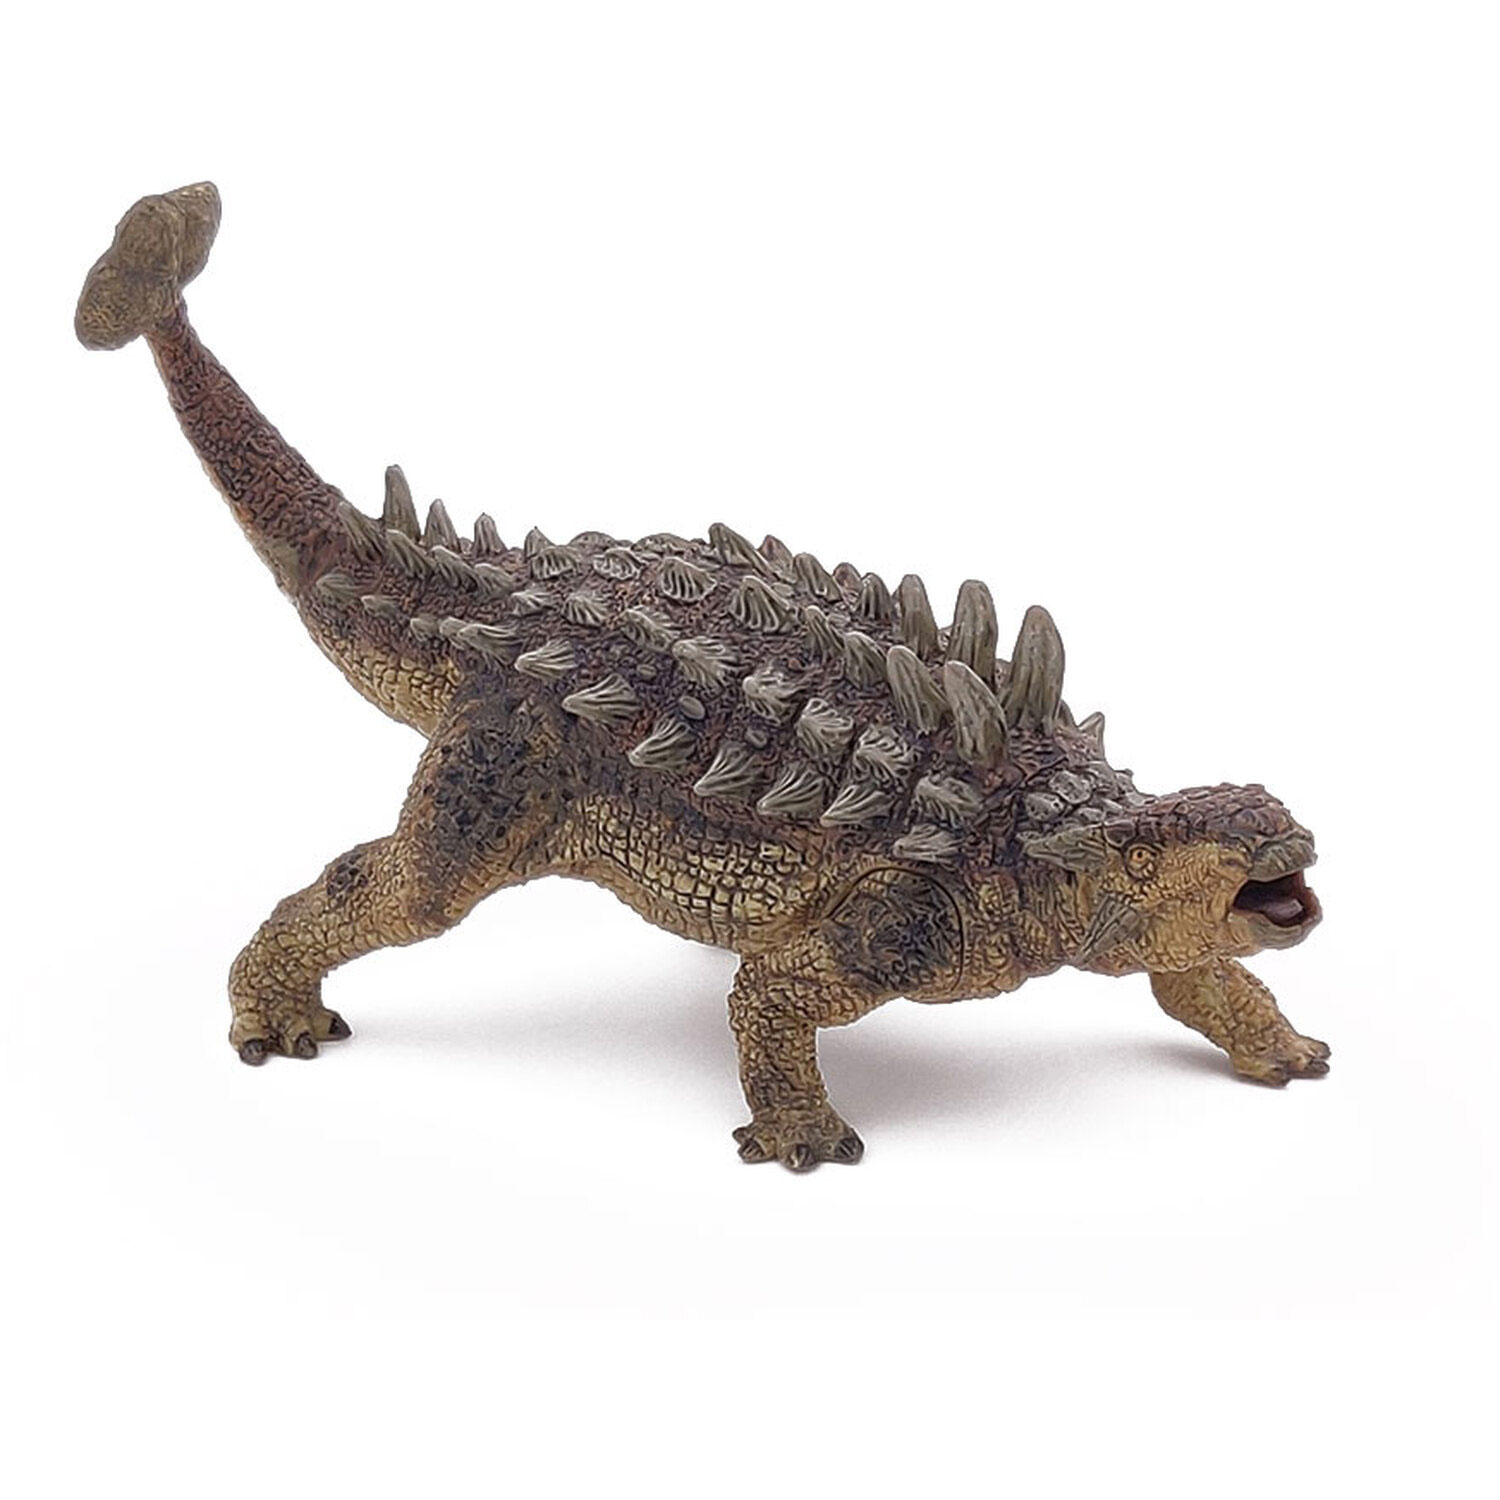 PAPO Dinosaurs Ankylosaurus Toy Figure